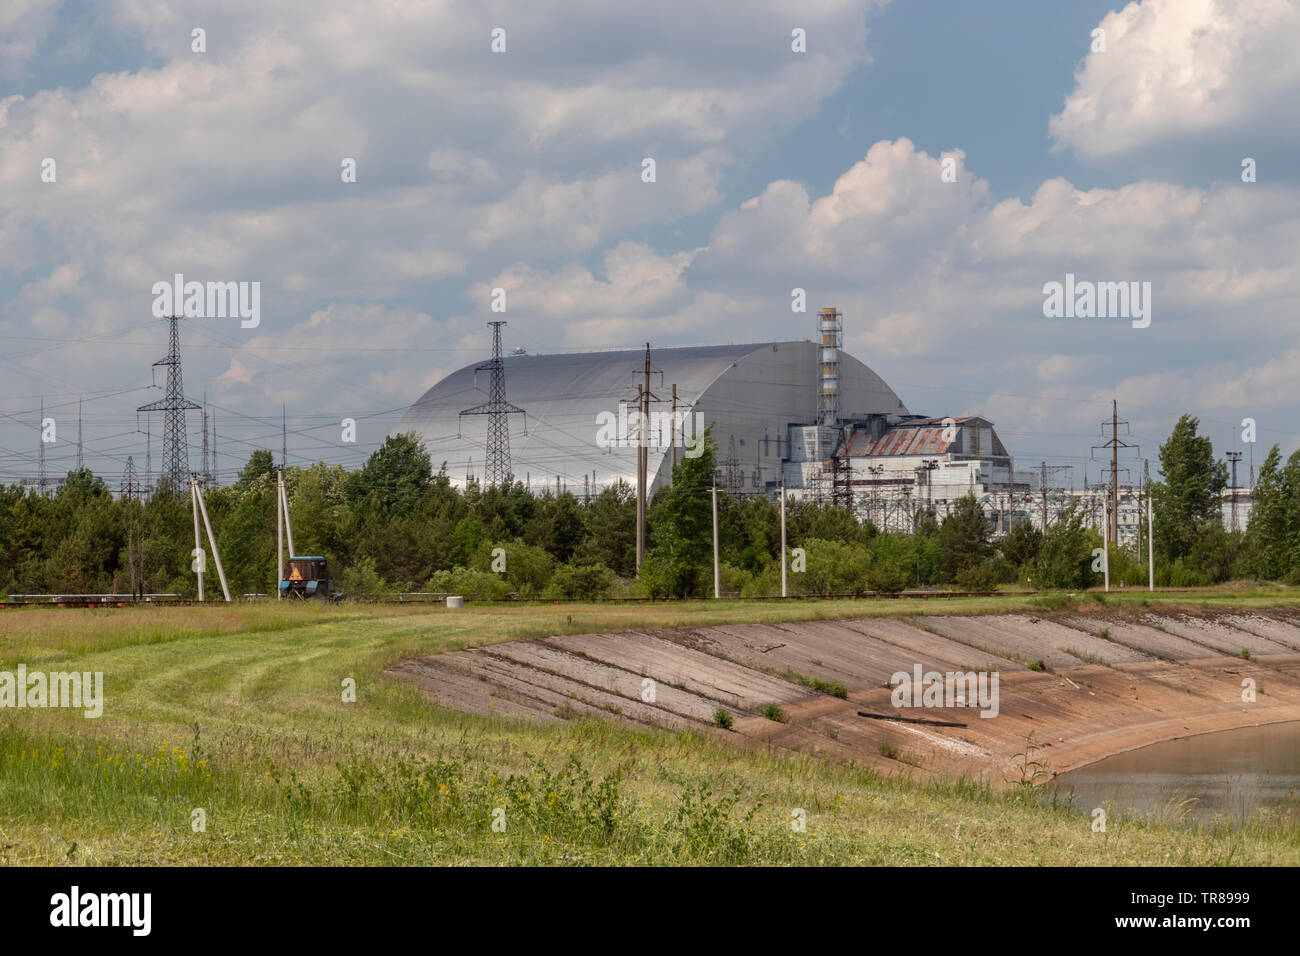 Mayo 2019 - Planta de Energía Nuclear de Chernobyl, el reactor 4, zona de exclusión de Chernobyl, Ucrania Foto de stock